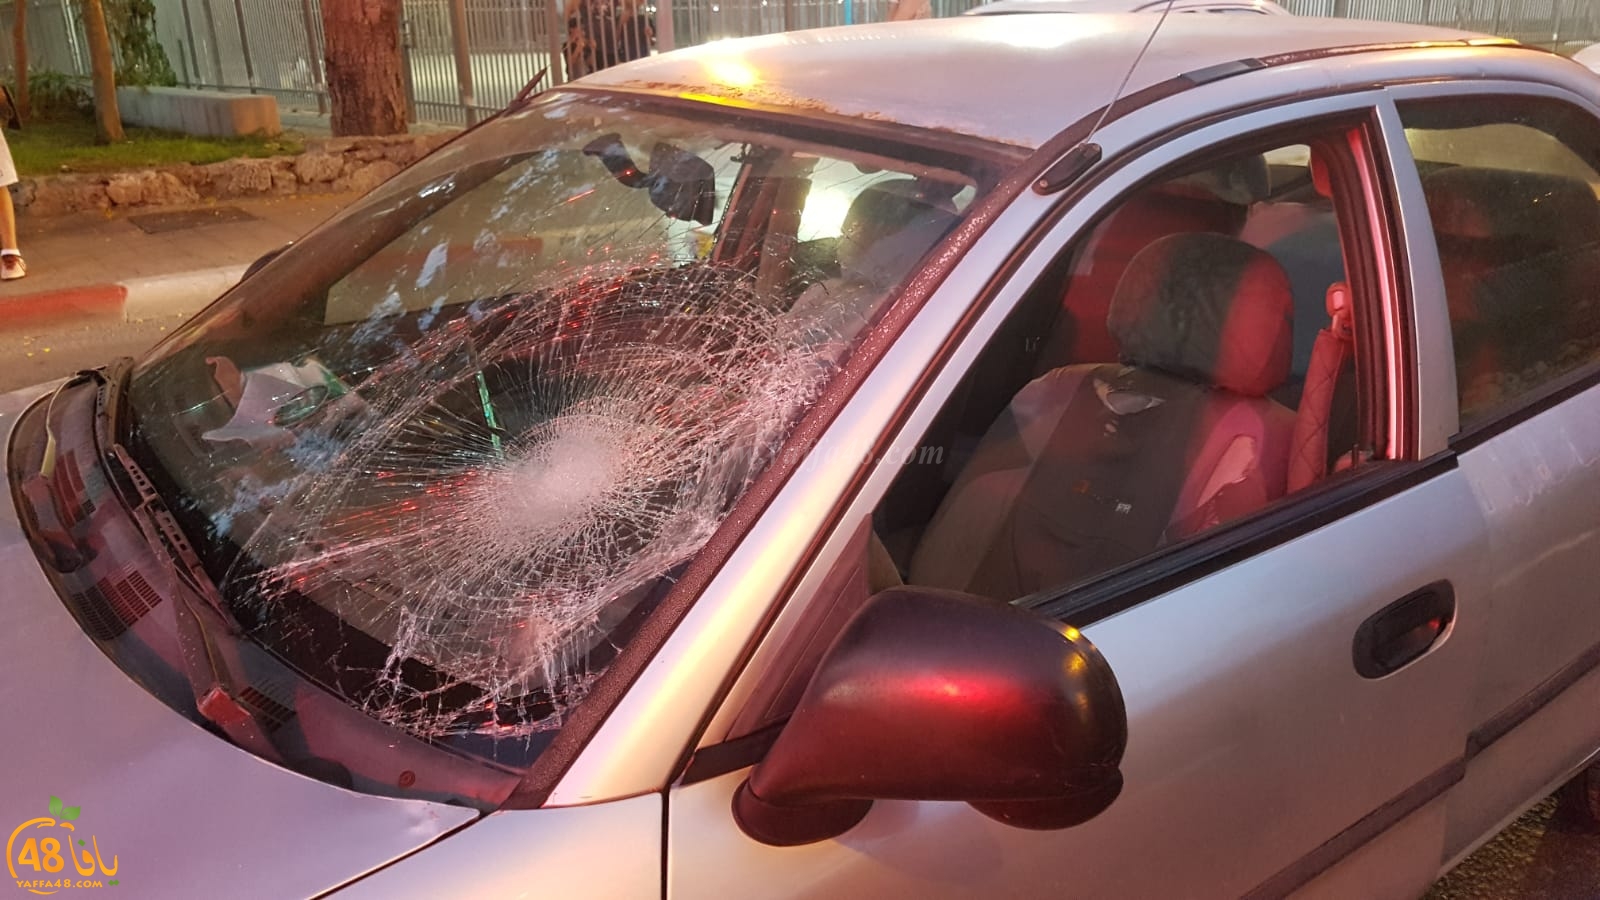 فيديو: اصابة خطرة لراكب دراجة هوائية بحادث دهس في مدينة يافا 